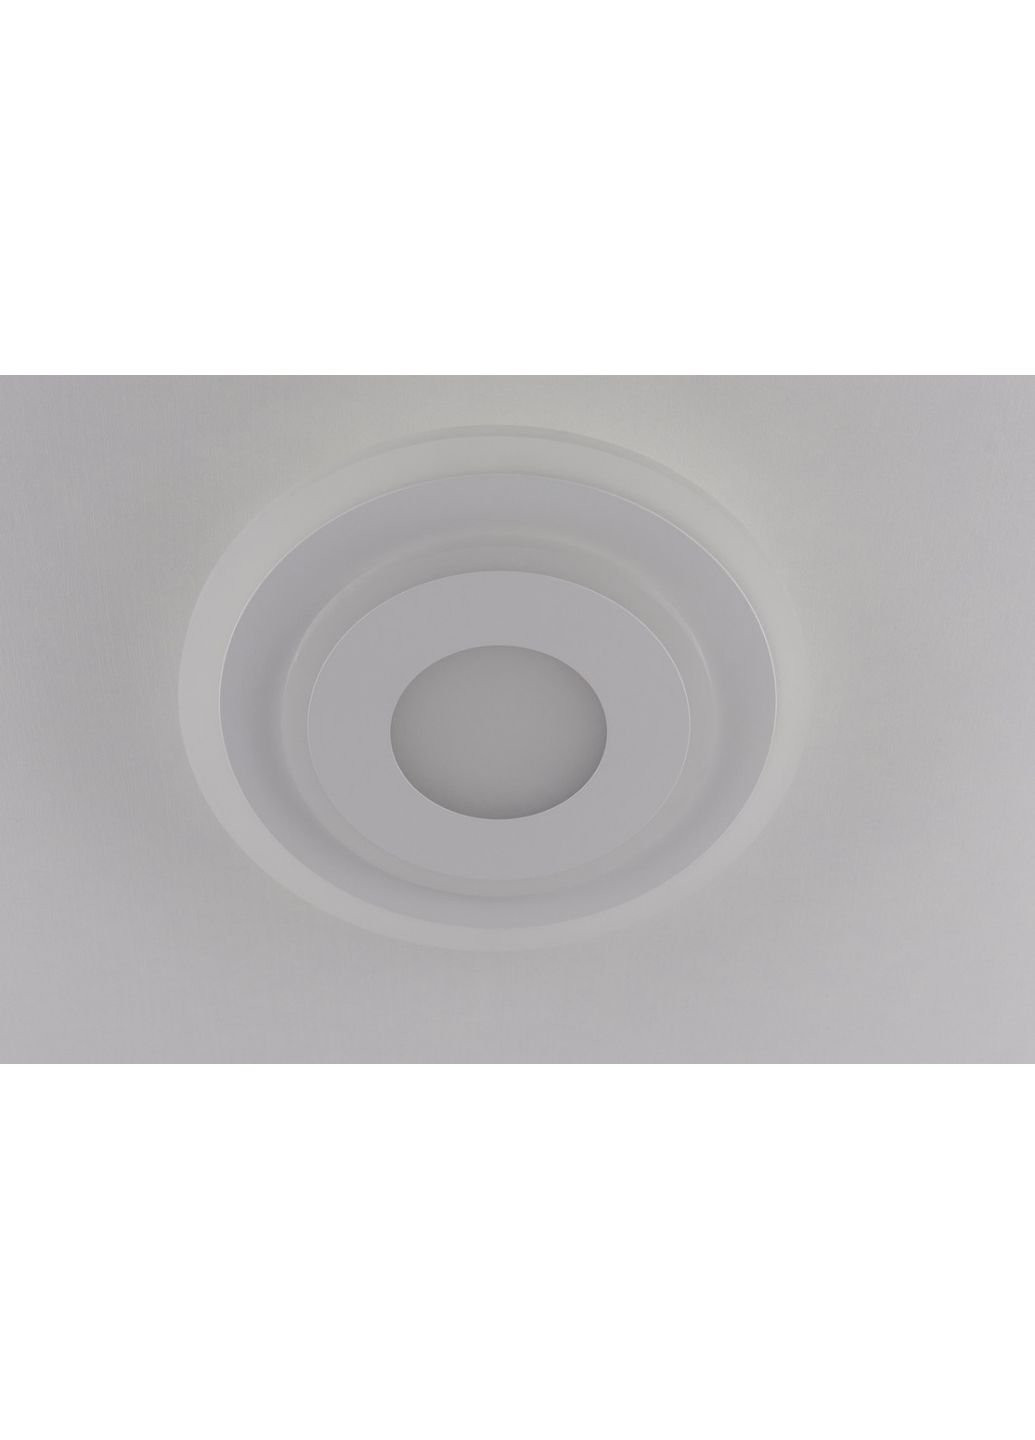 Светильник потолочный LED 2245/250-wh Белый 4х25х25 см. Sunnysky (253631011)